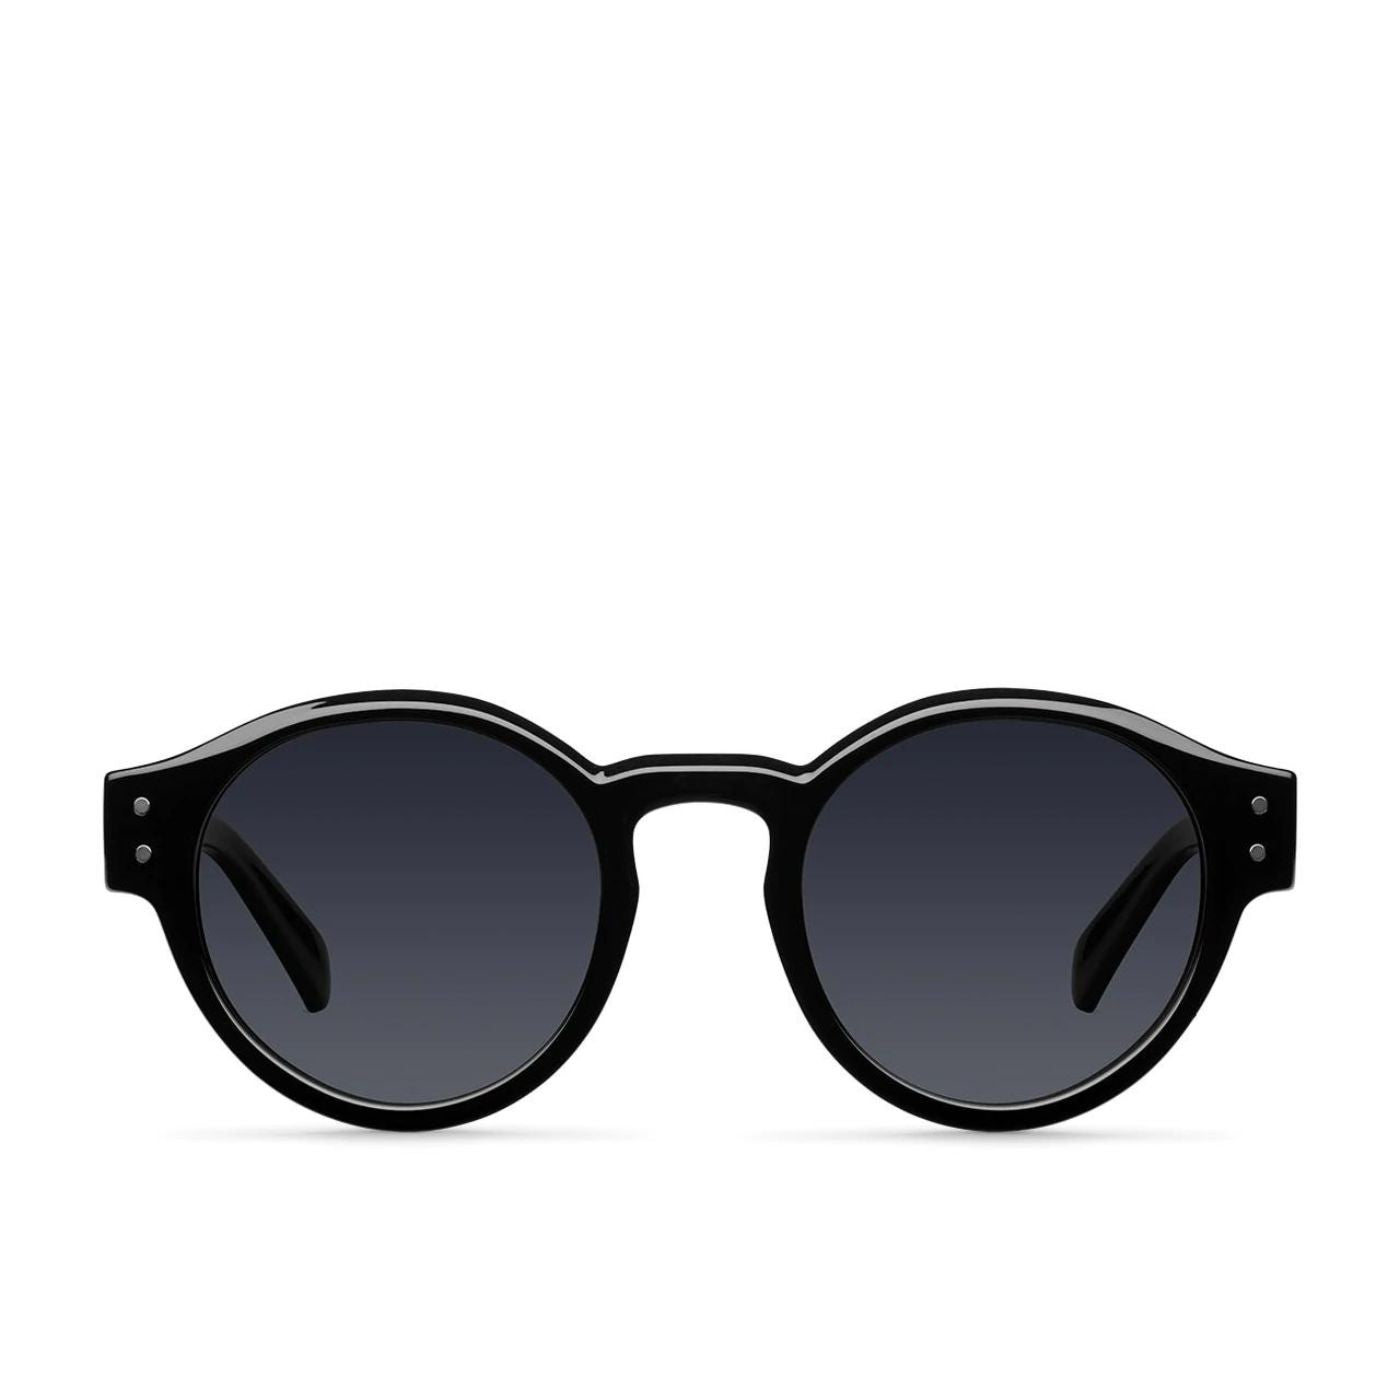 Fynn All Black Meller sunglasses